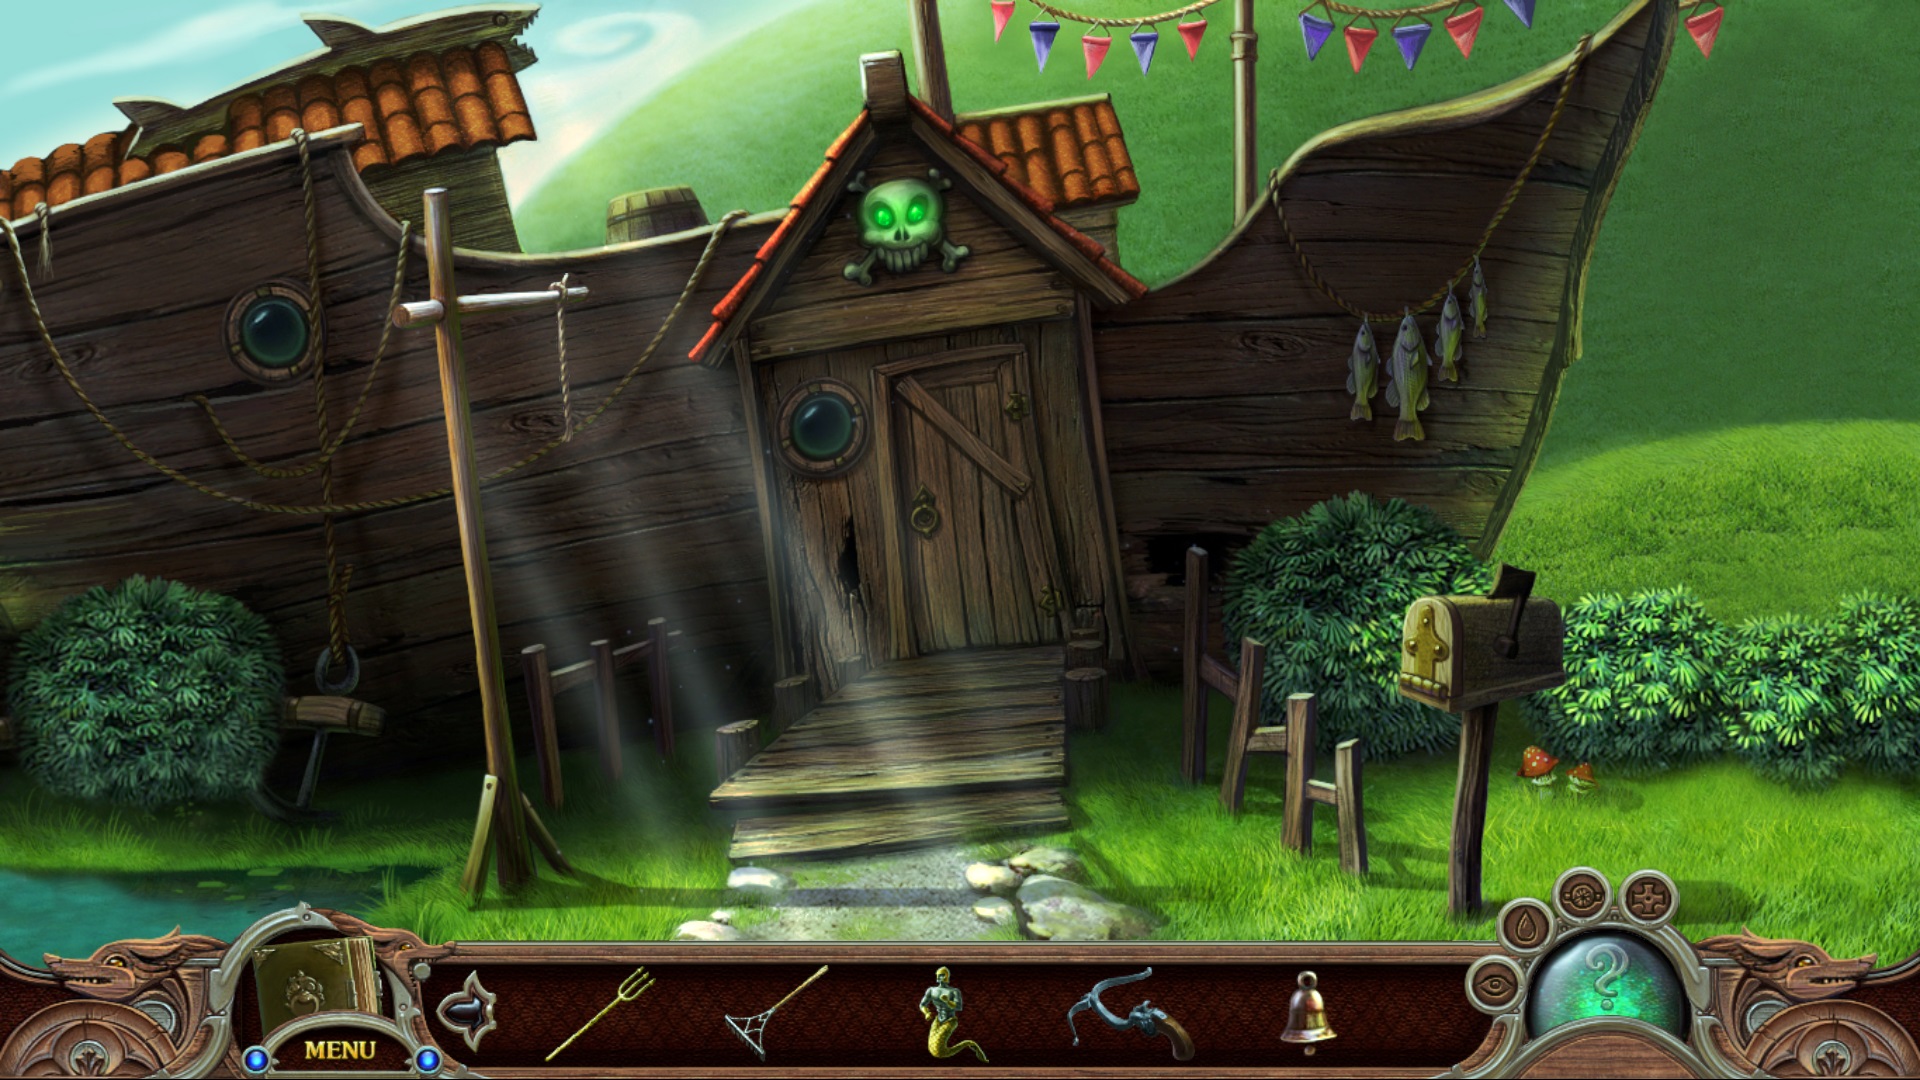 dream-hills-captured-magic-2013-game-details-adventure-gamers